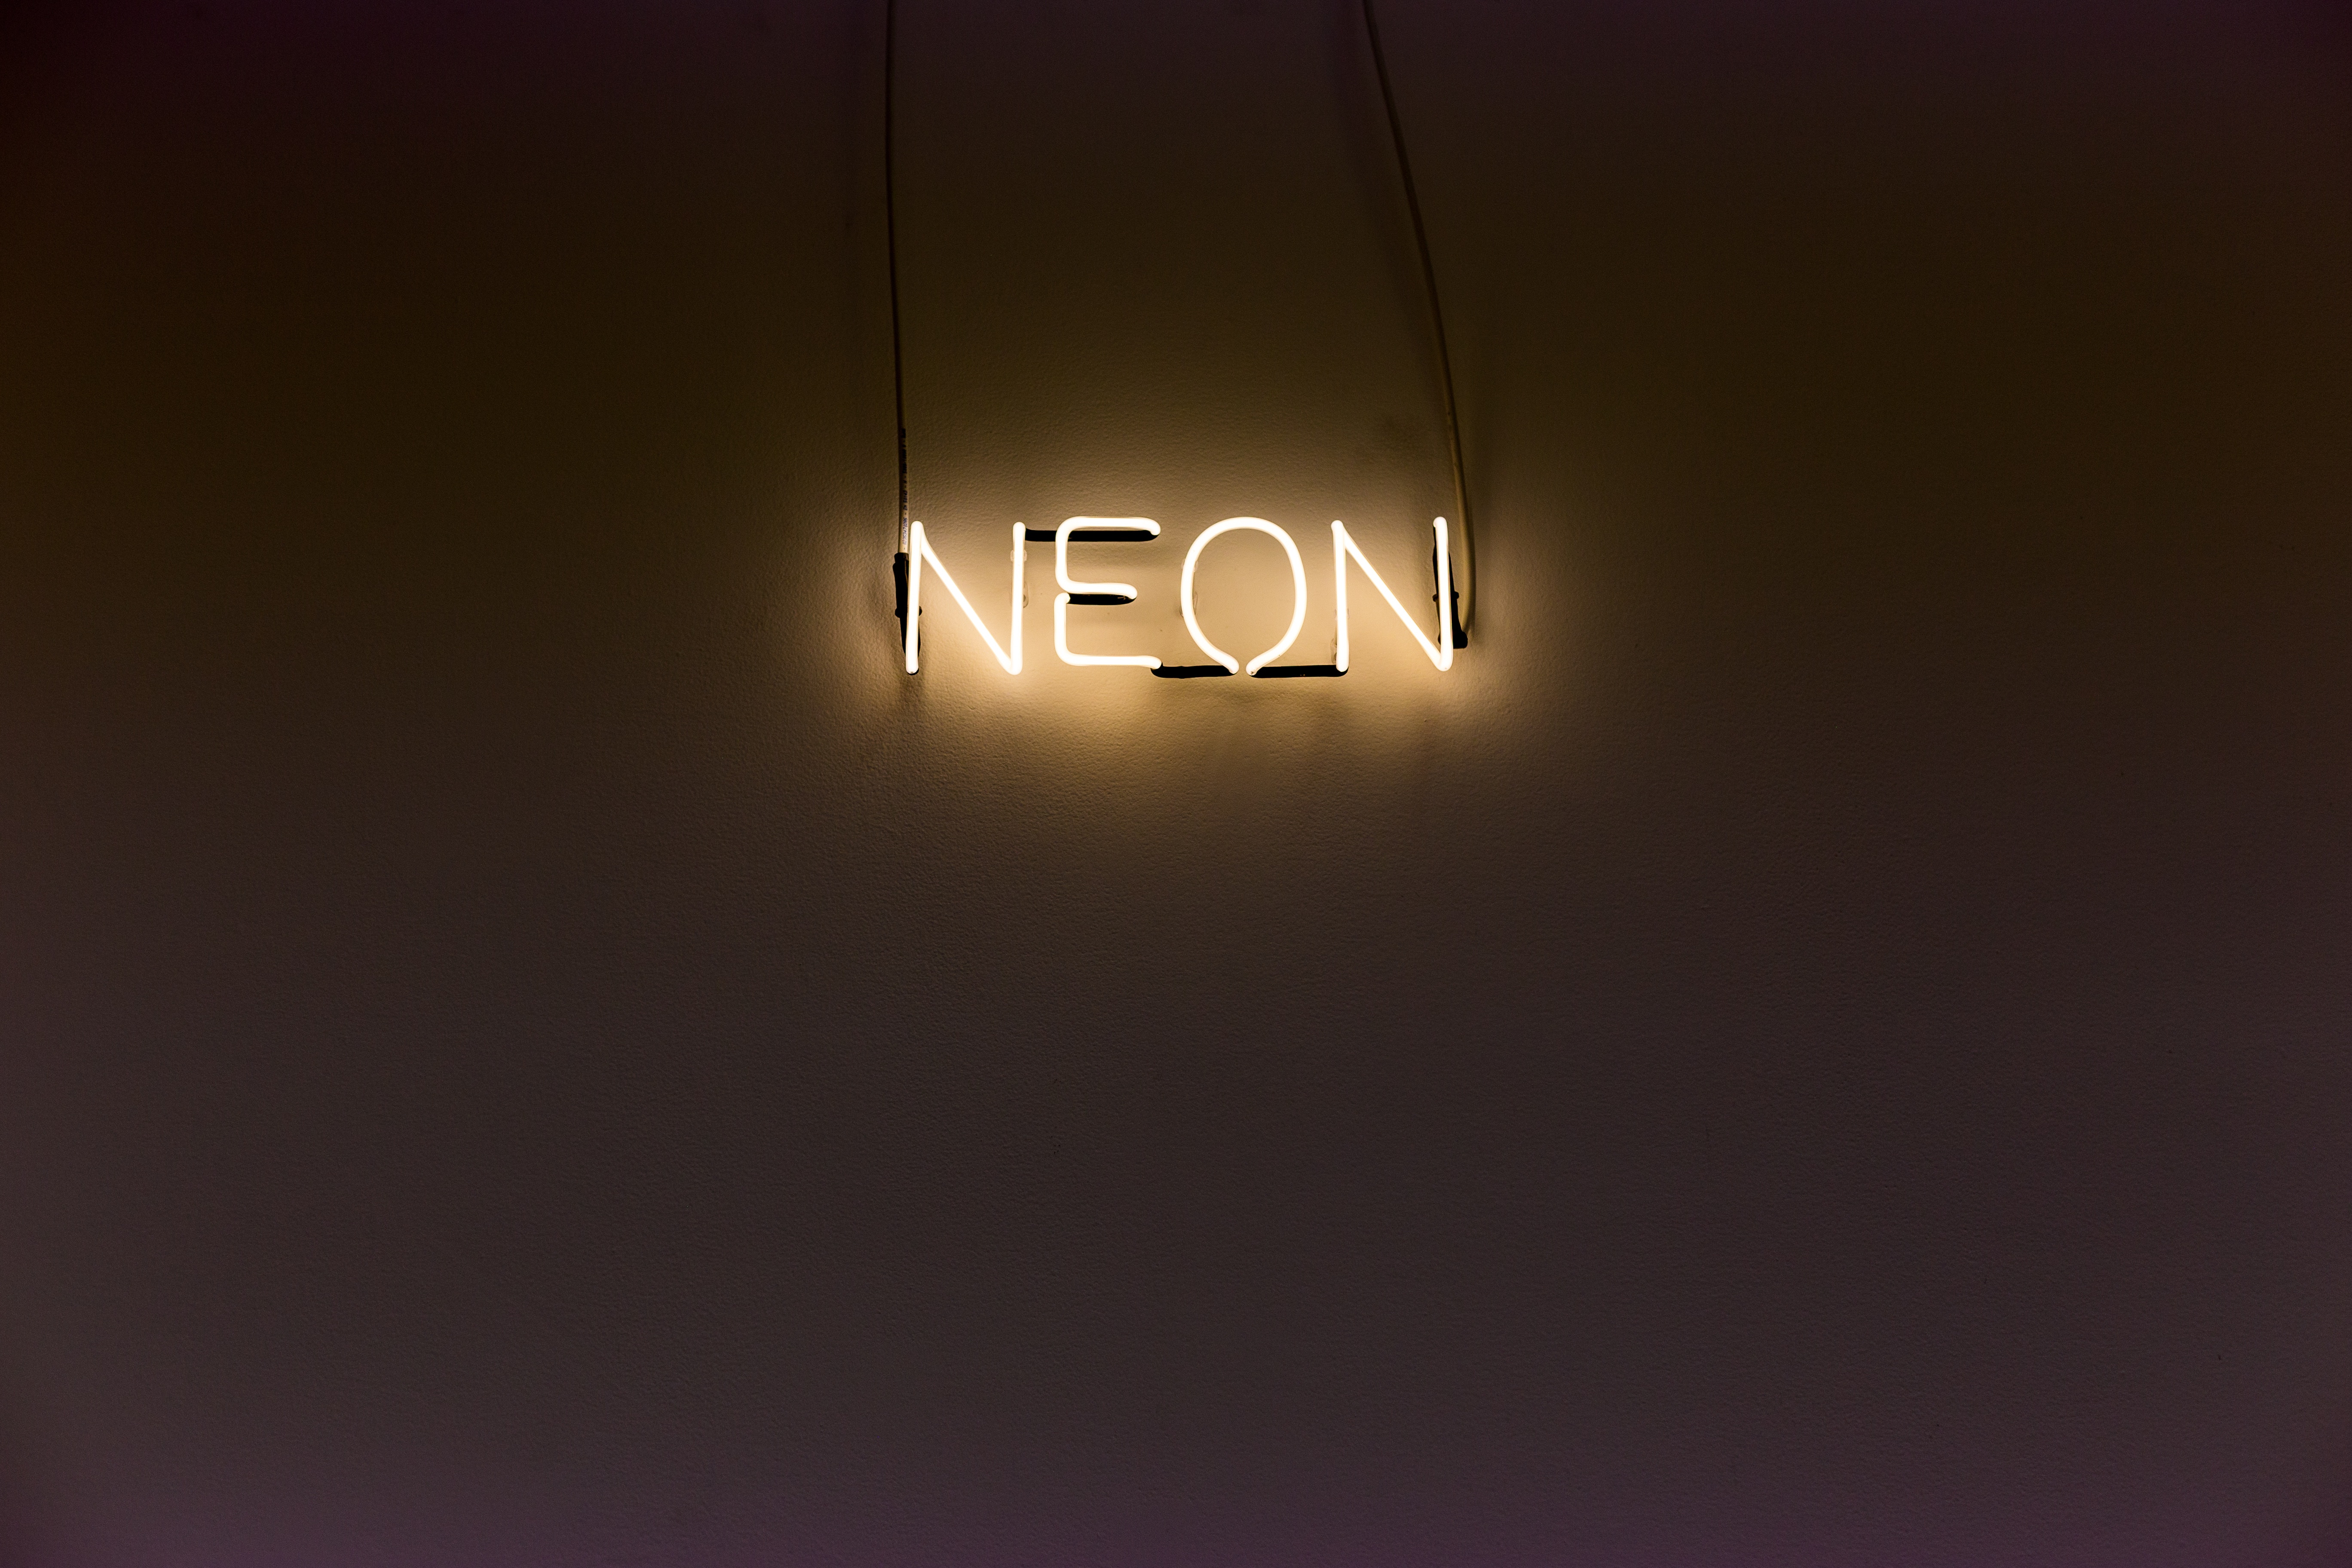 neon, words, wall, backlight, illumination, inscription cellphone